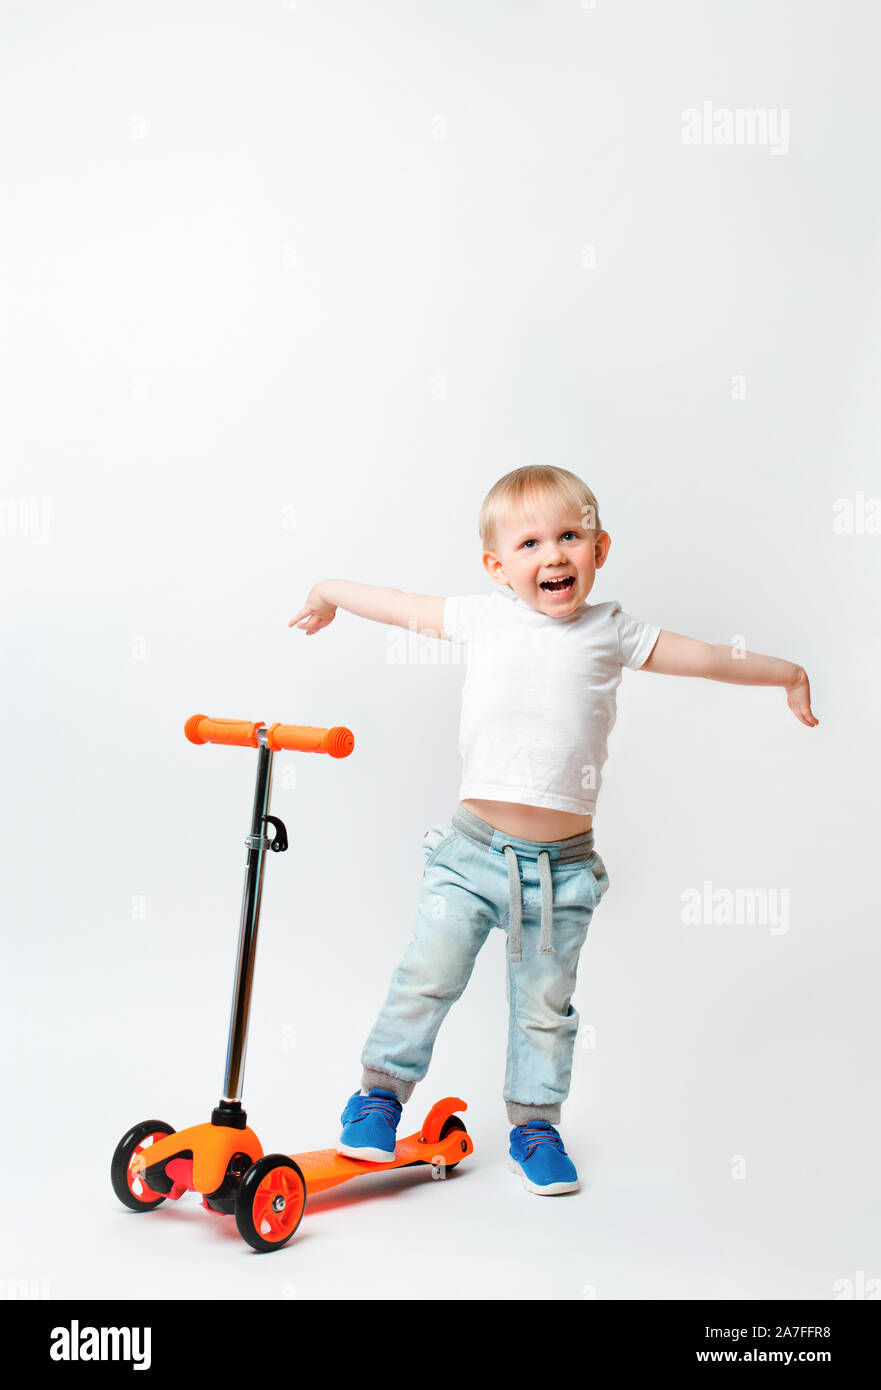 Kleinkind, Ein sehr fröhliches Kind, hob seine Hände in Ehrfurcht vor Gabe der Roller. Konzept für die Werbung und Artikel über Spielzeug und Fahrräder auf einem weißen b Stockfoto